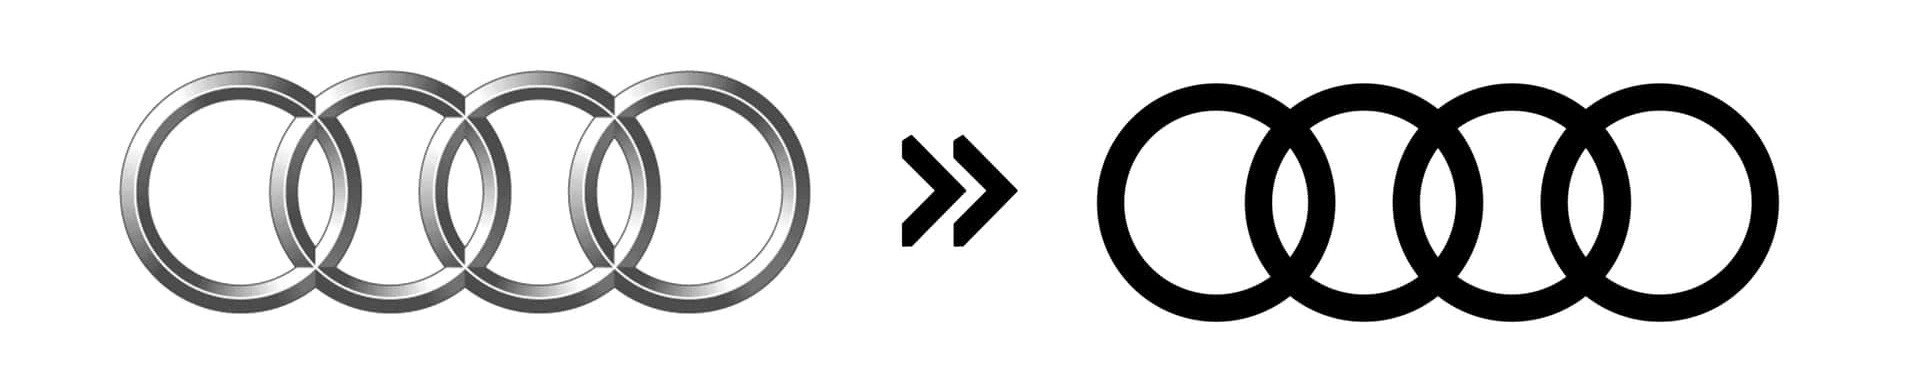 Audi (2022): Biểu tượng 4 vòng tròn của Audi sử dụng từ năm 2005 đã được thay mới vào 2022, khi bỏ đi giao diện 3D màu bạc để thay bằng 4 vòng tròn không thể đơn giản hơn - Ảnh: Motor1